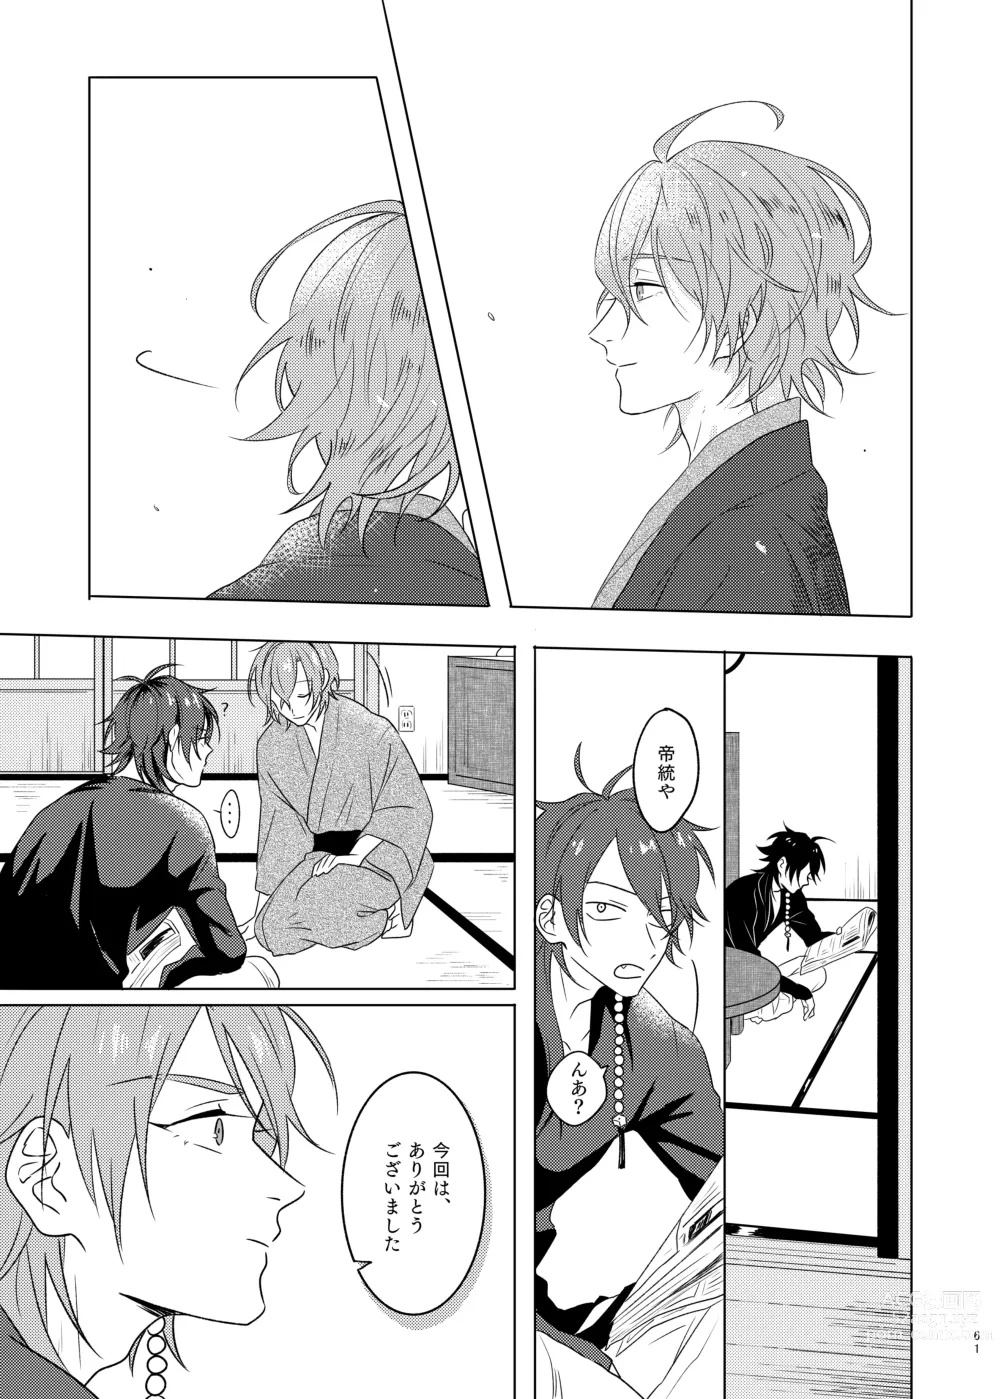 Page 61 of doujinshi Kami sama no ko